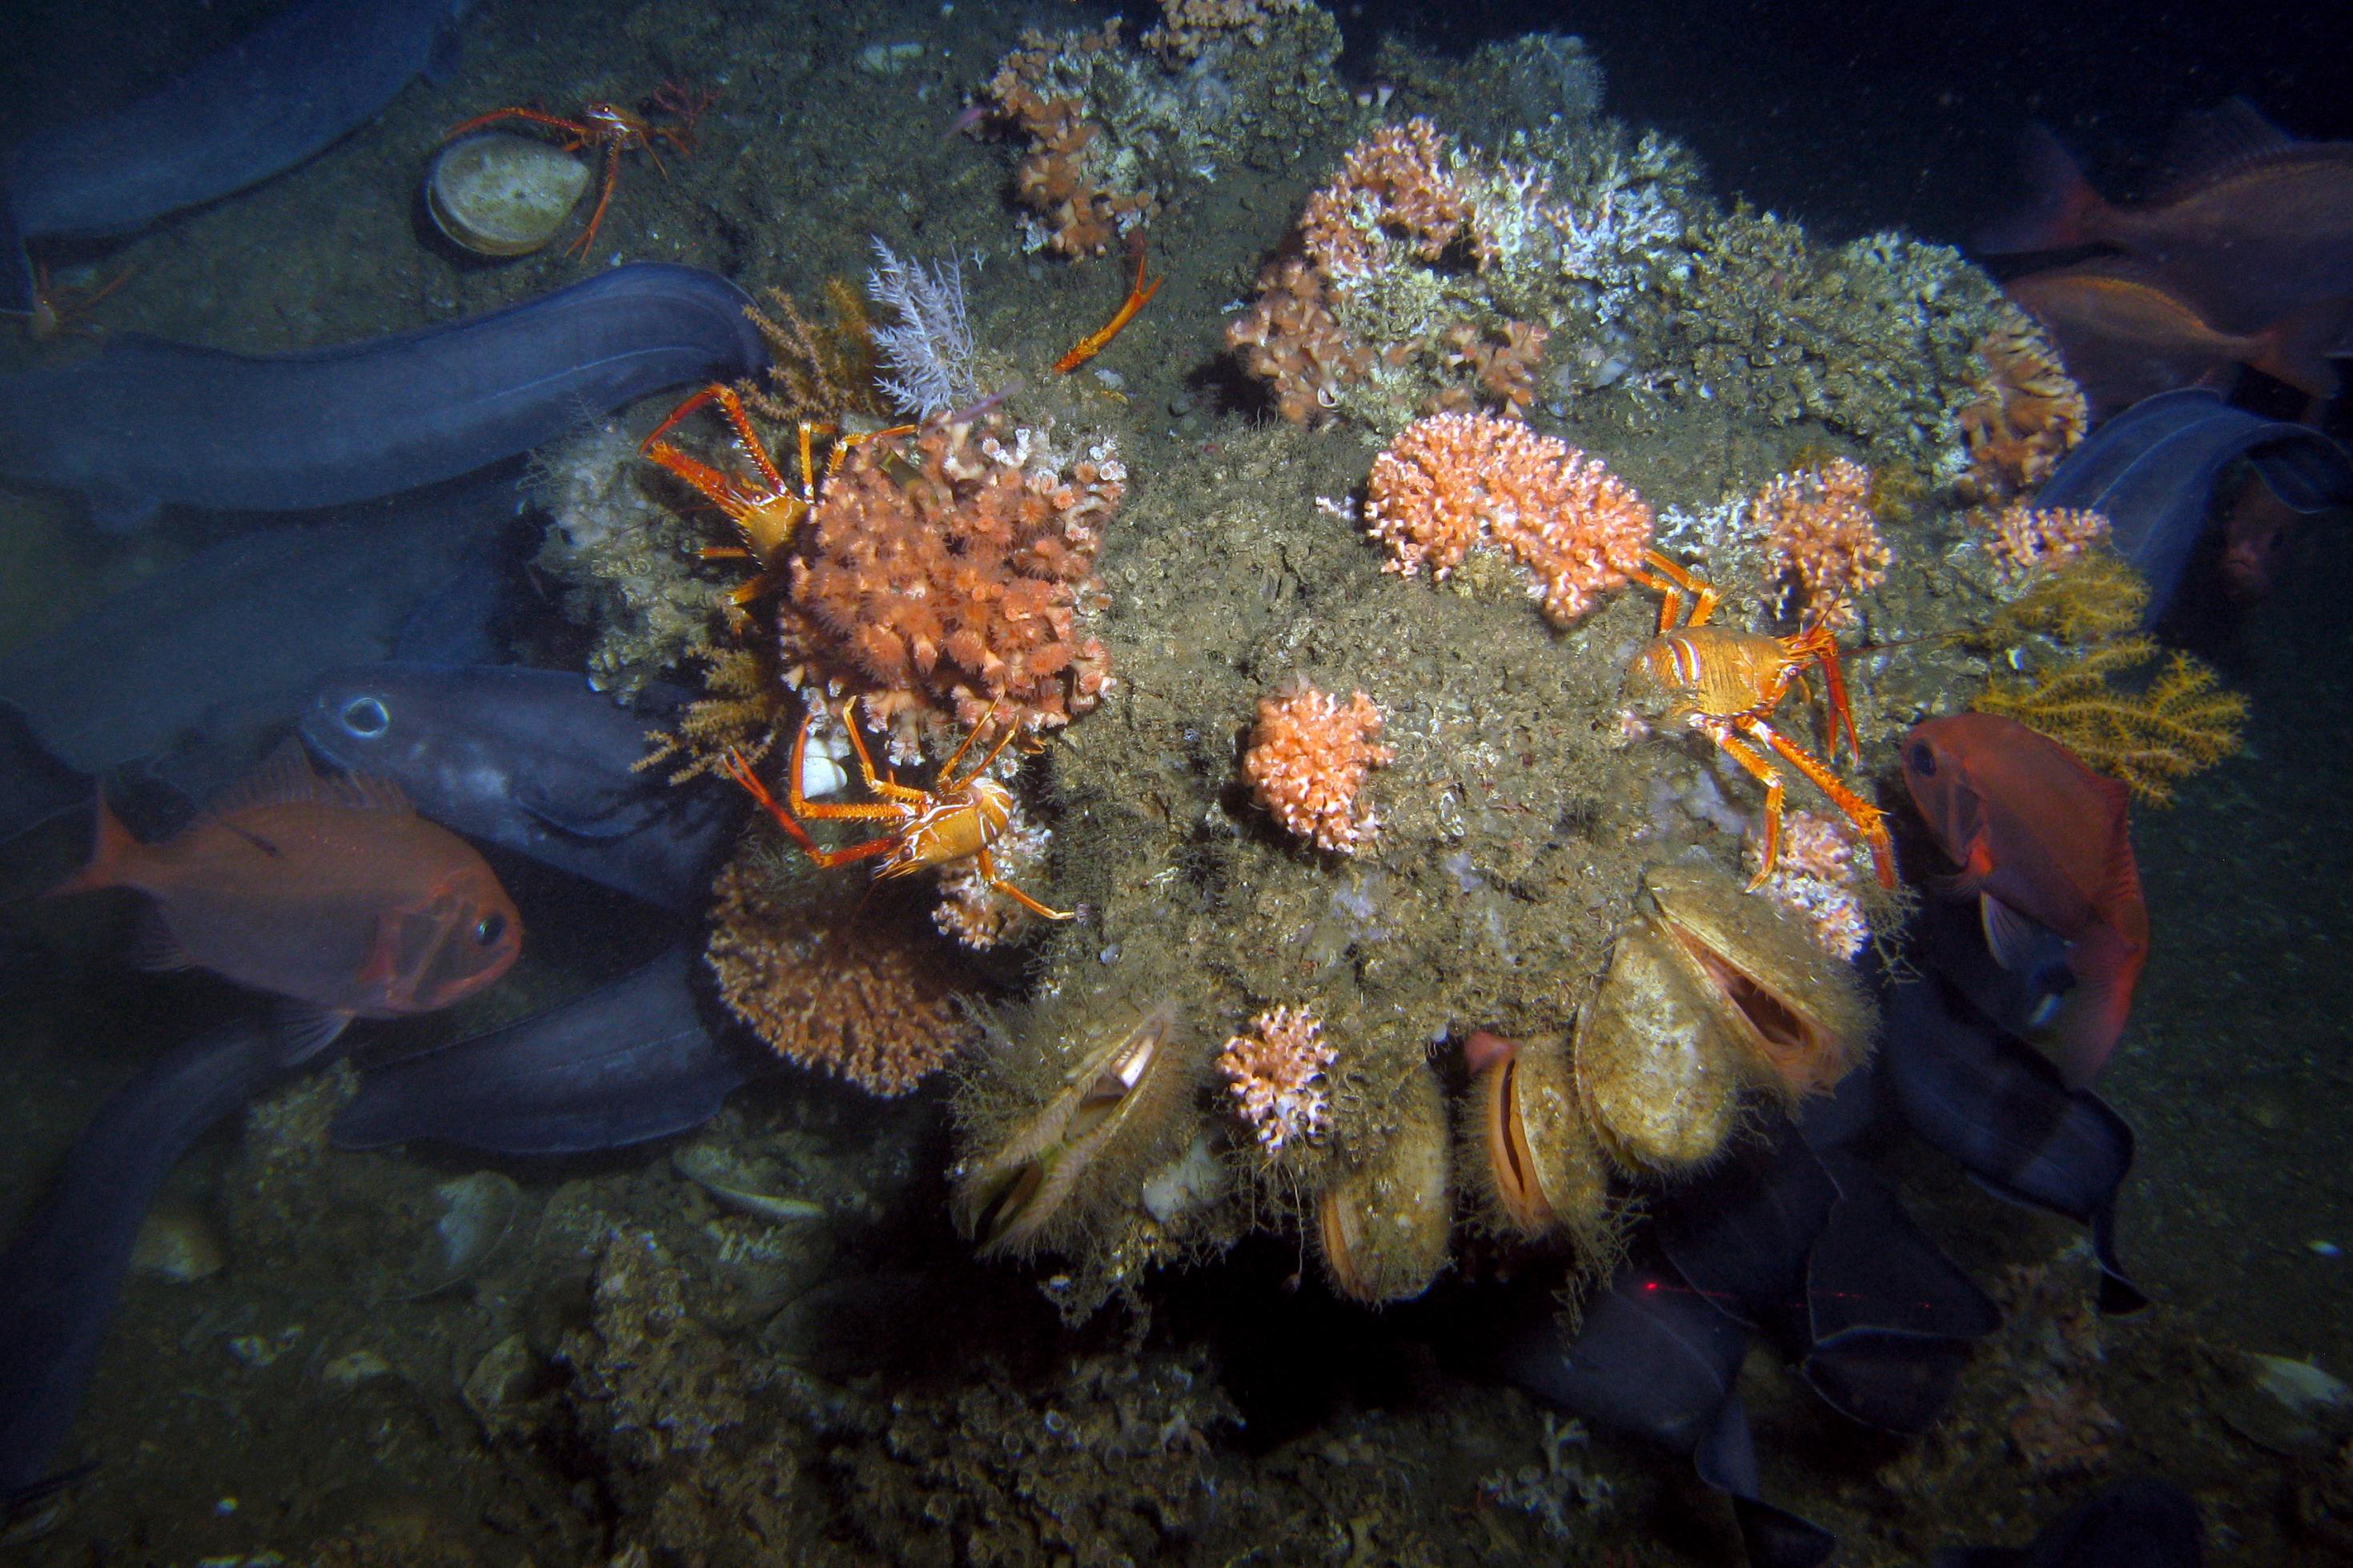 Am tiefen dunkeln Meeresboden ist ein Riff mit Korallen, Orangen Krabben mit weißen Streifen, Muscheln, roten und schlangenförmigen blauen Fischen zu erkennen.